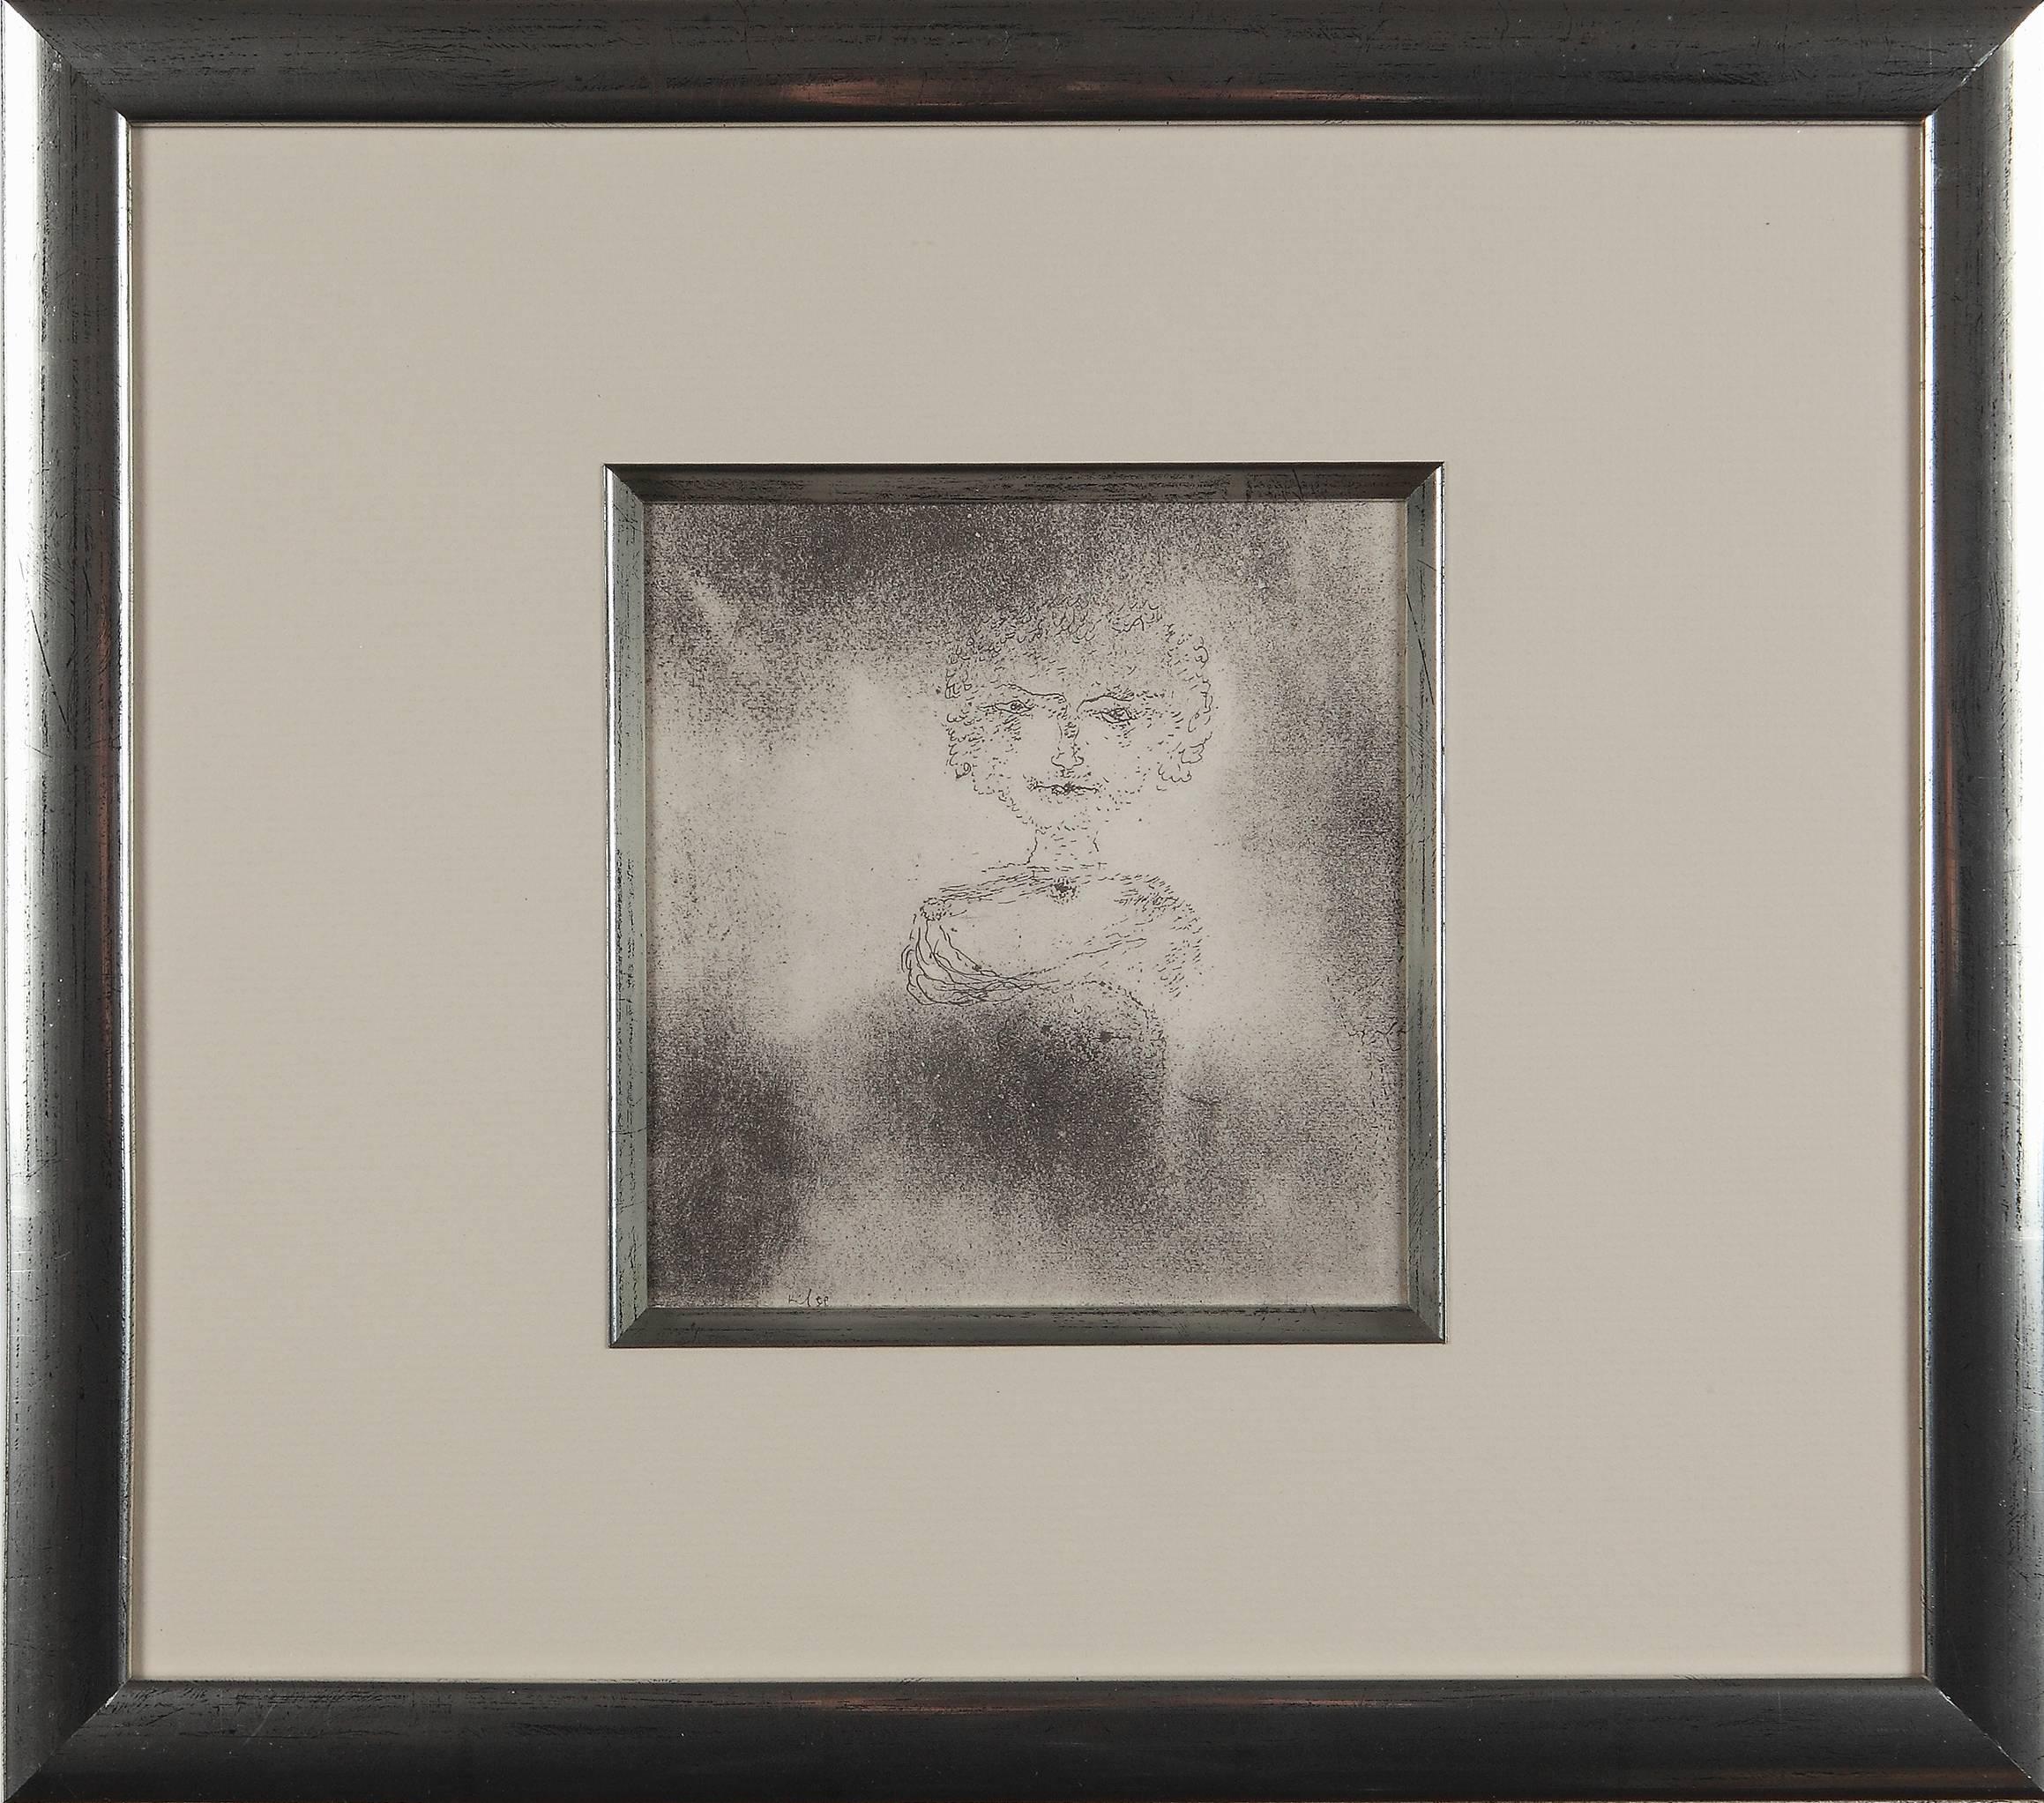 (after) Paul Klee Portrait Print - Paul Klee Etching "Bildnis einer Dame mit ihrem Schoßhündchen"